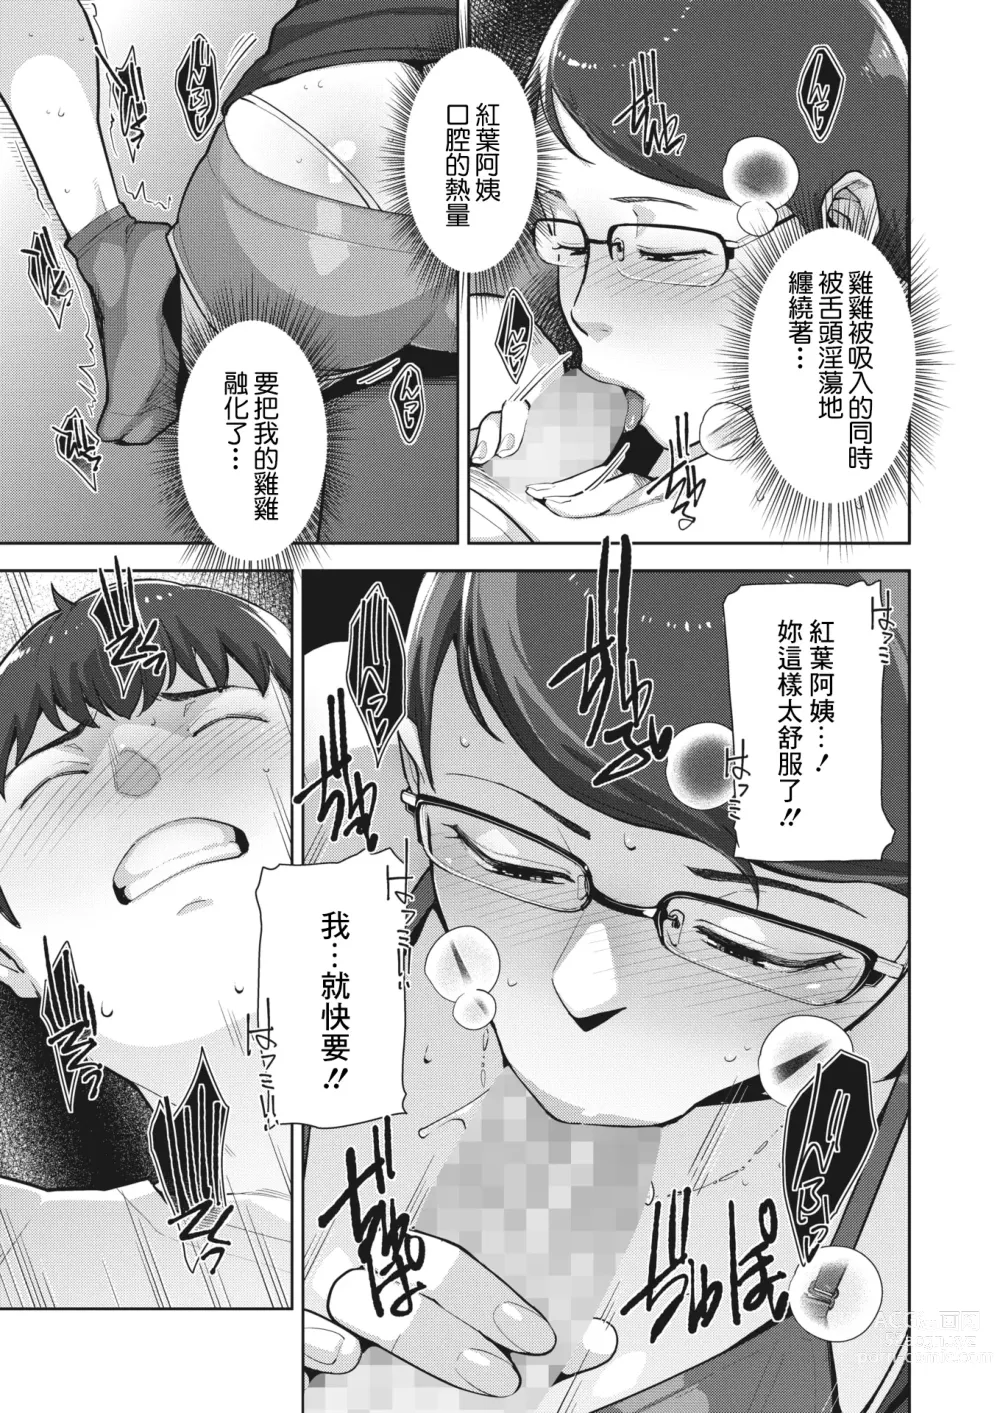 Page 13 of manga Irodori Kazoku Ch. 2